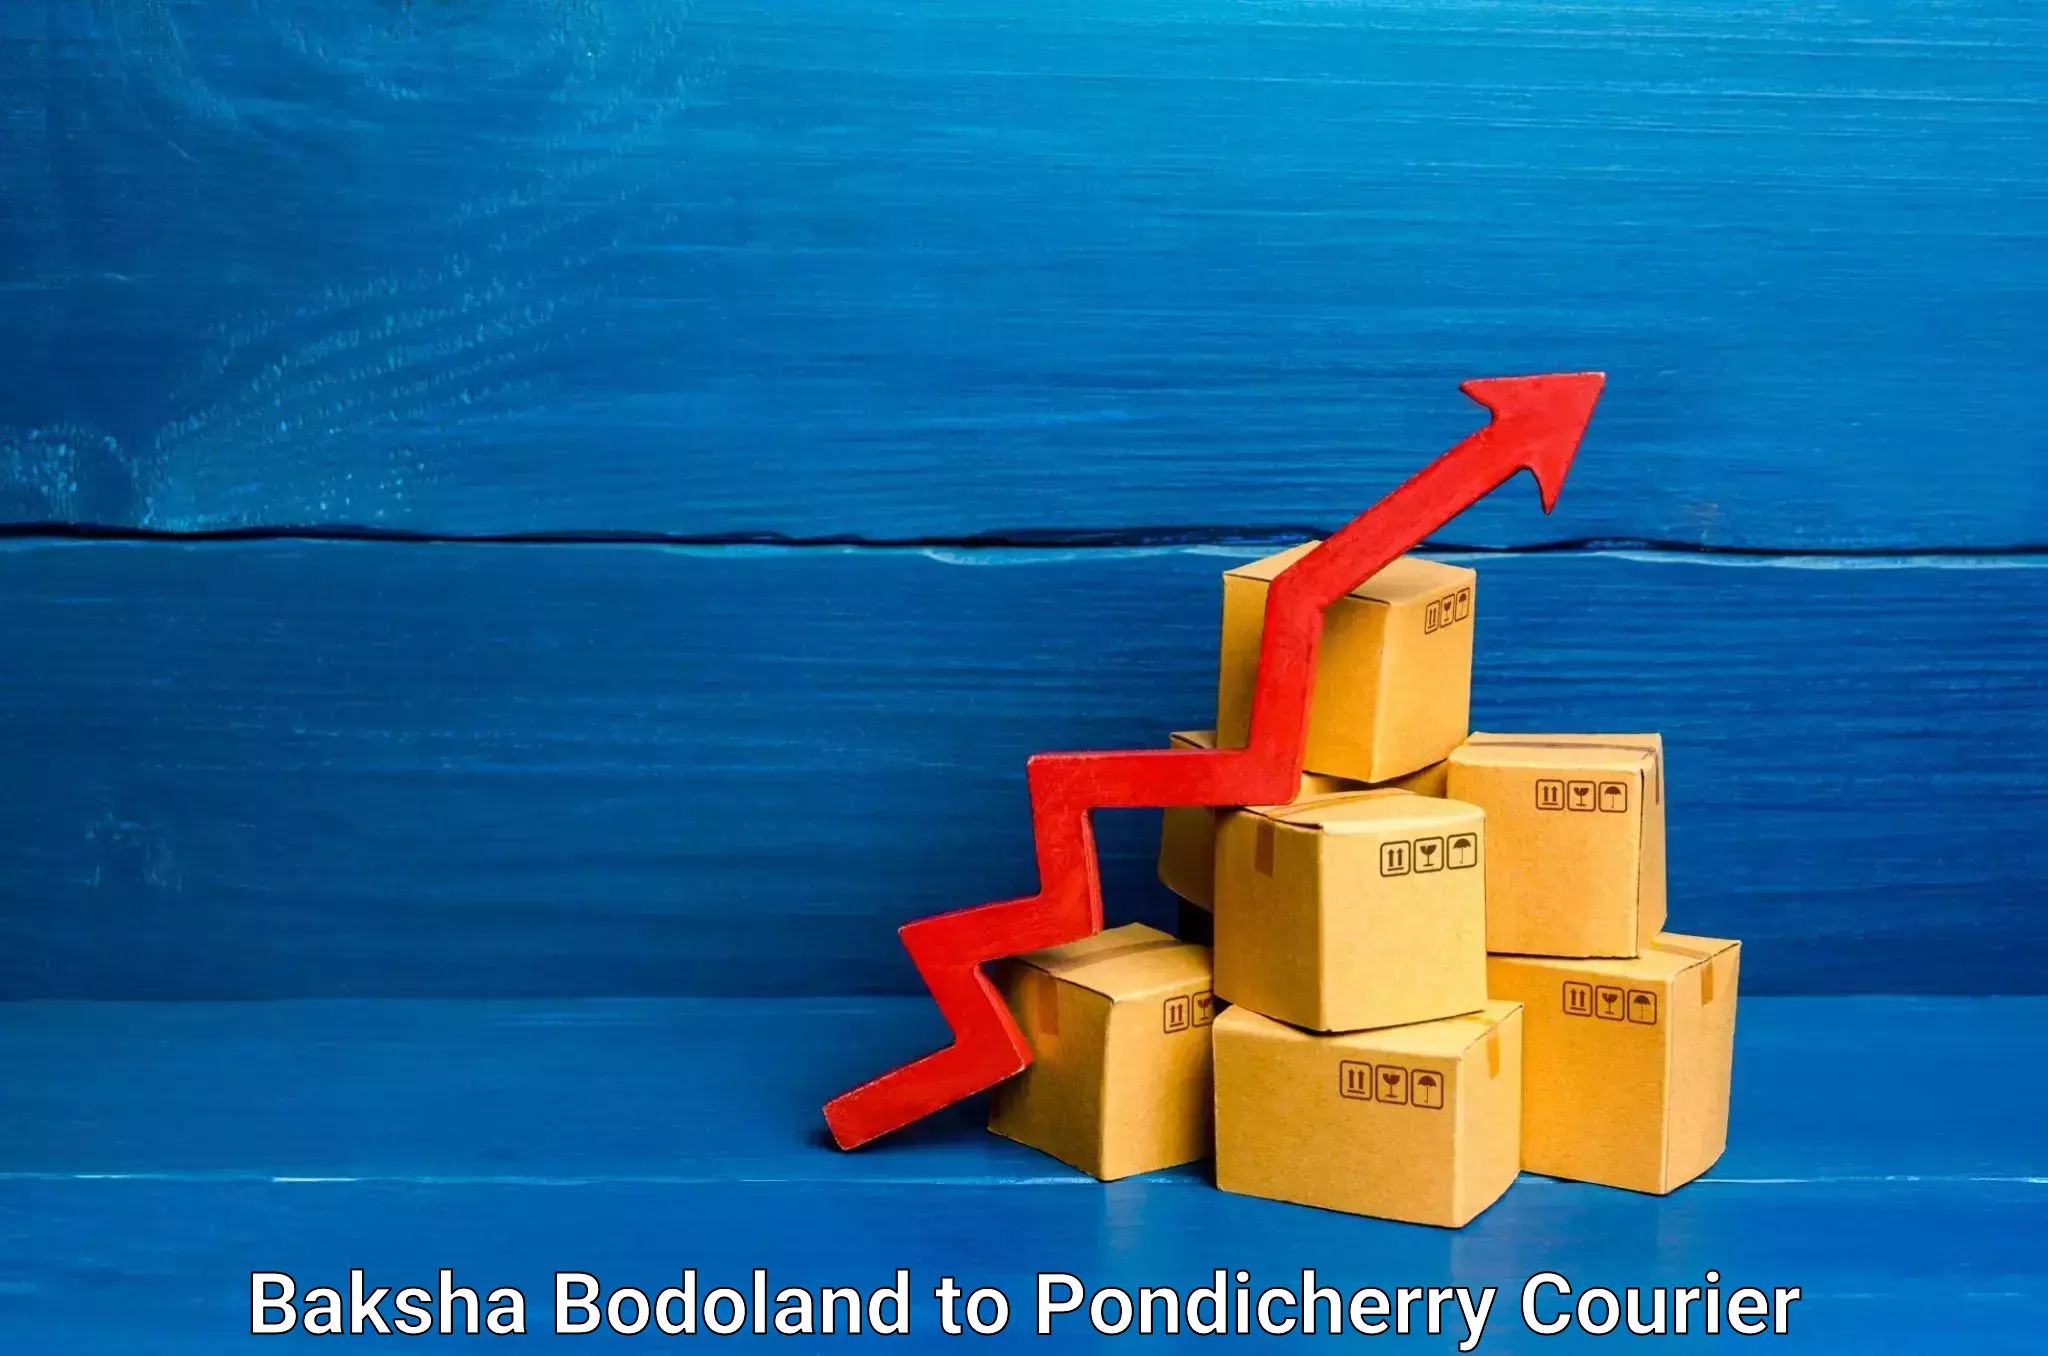 Holiday shipping services Baksha Bodoland to Pondicherry